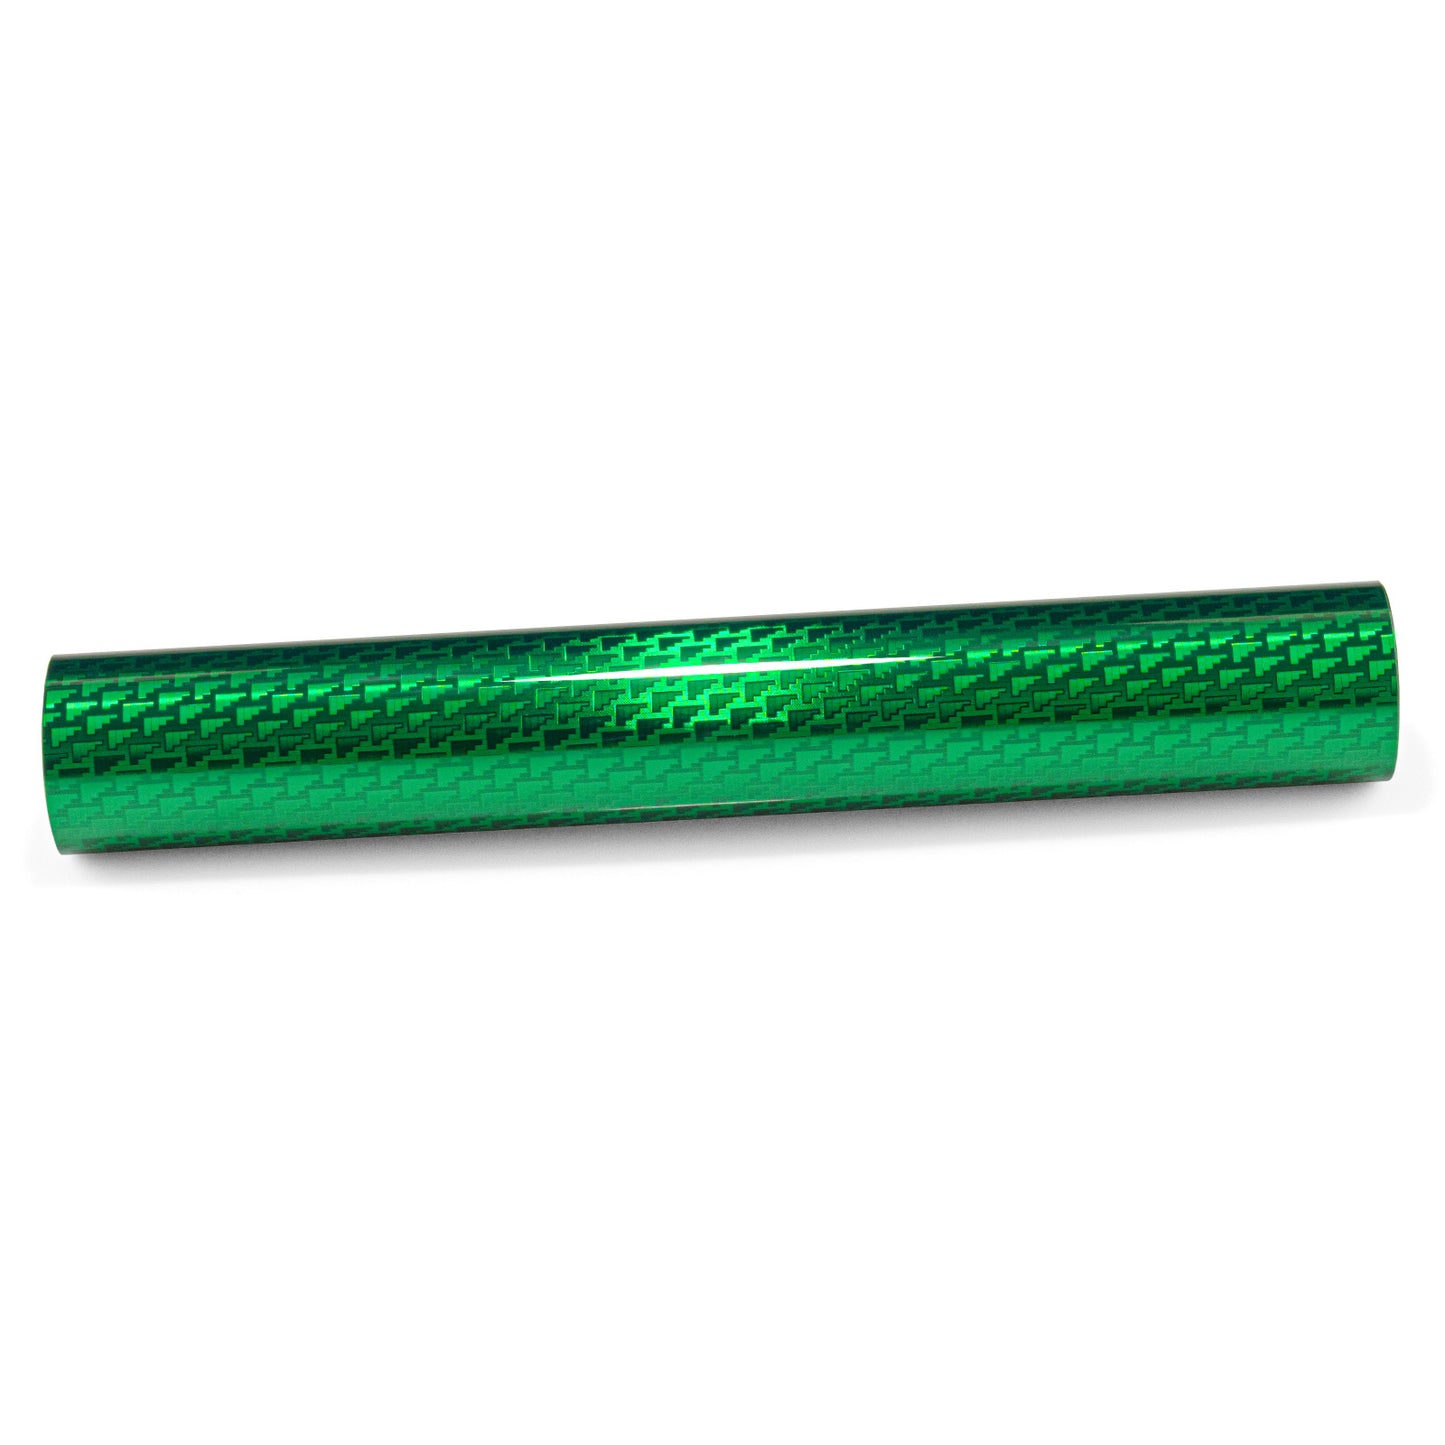 PET Squadron Carbon Fiber Gloss Emerald Green Vinyl Wrap